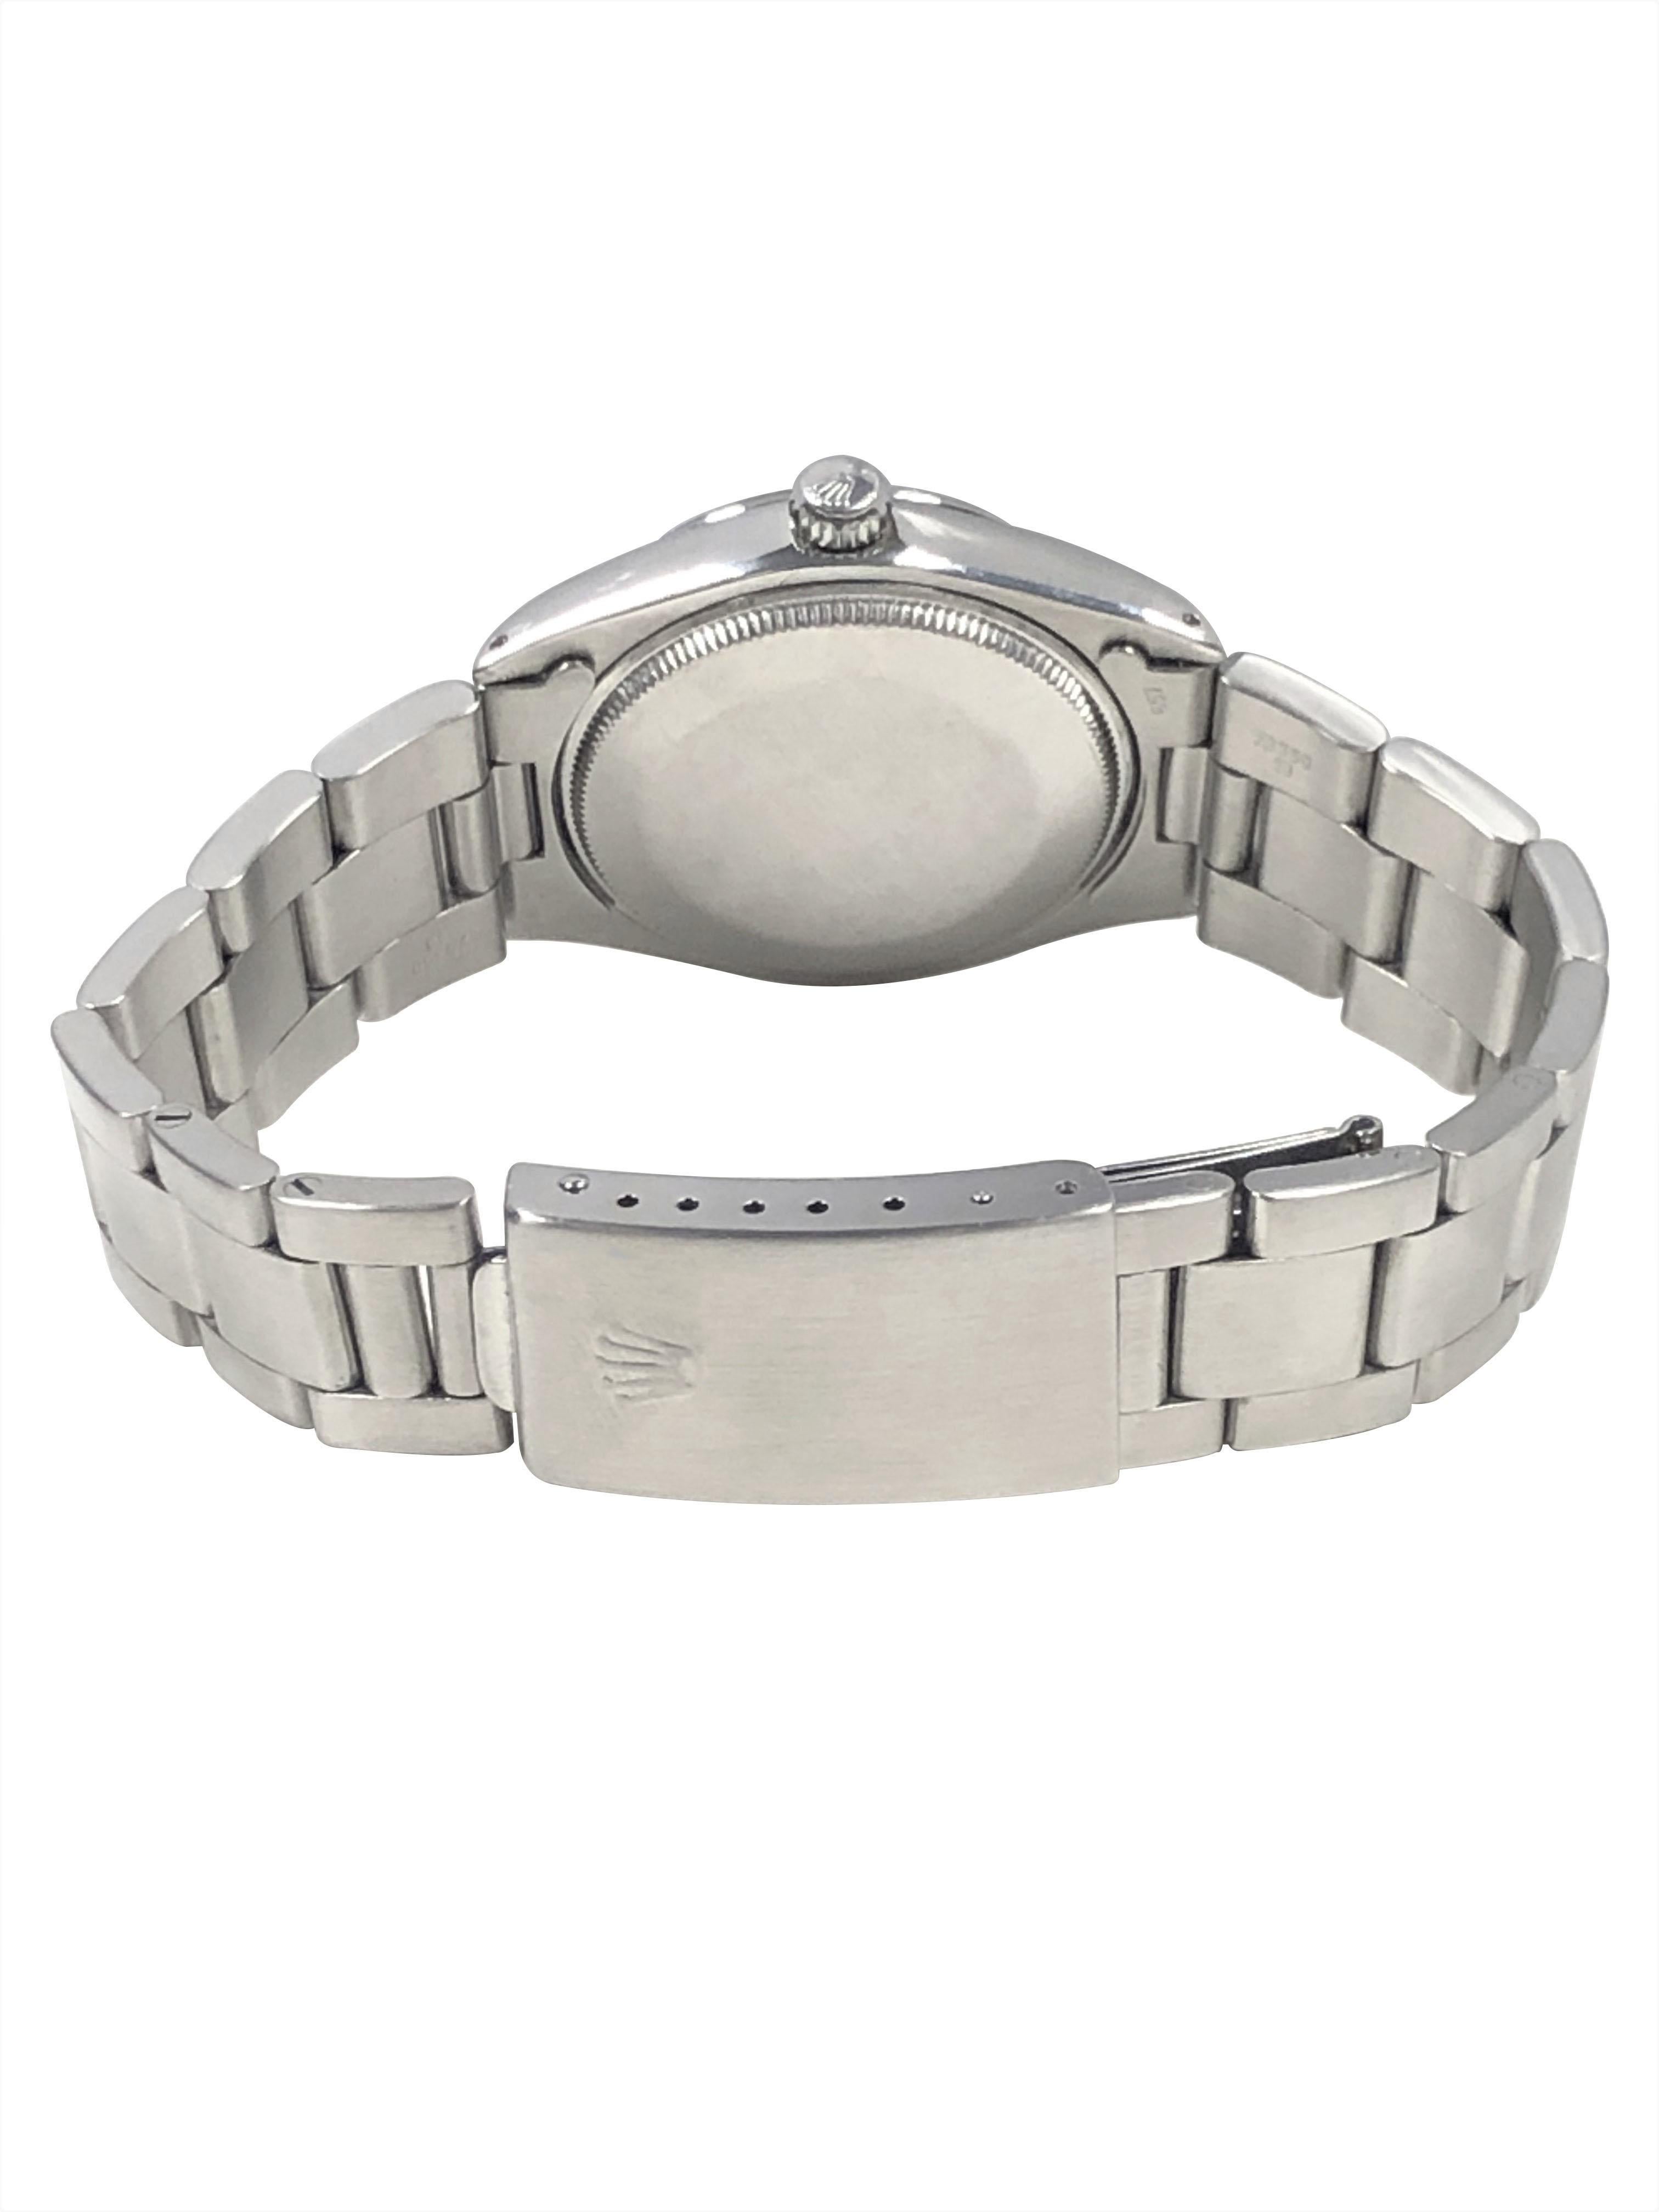 Rolex Air-King Vintage Edelstahl-Armbanduhr mit Selbstaufzug und tropischem Zifferblatt für Damen oder Herren